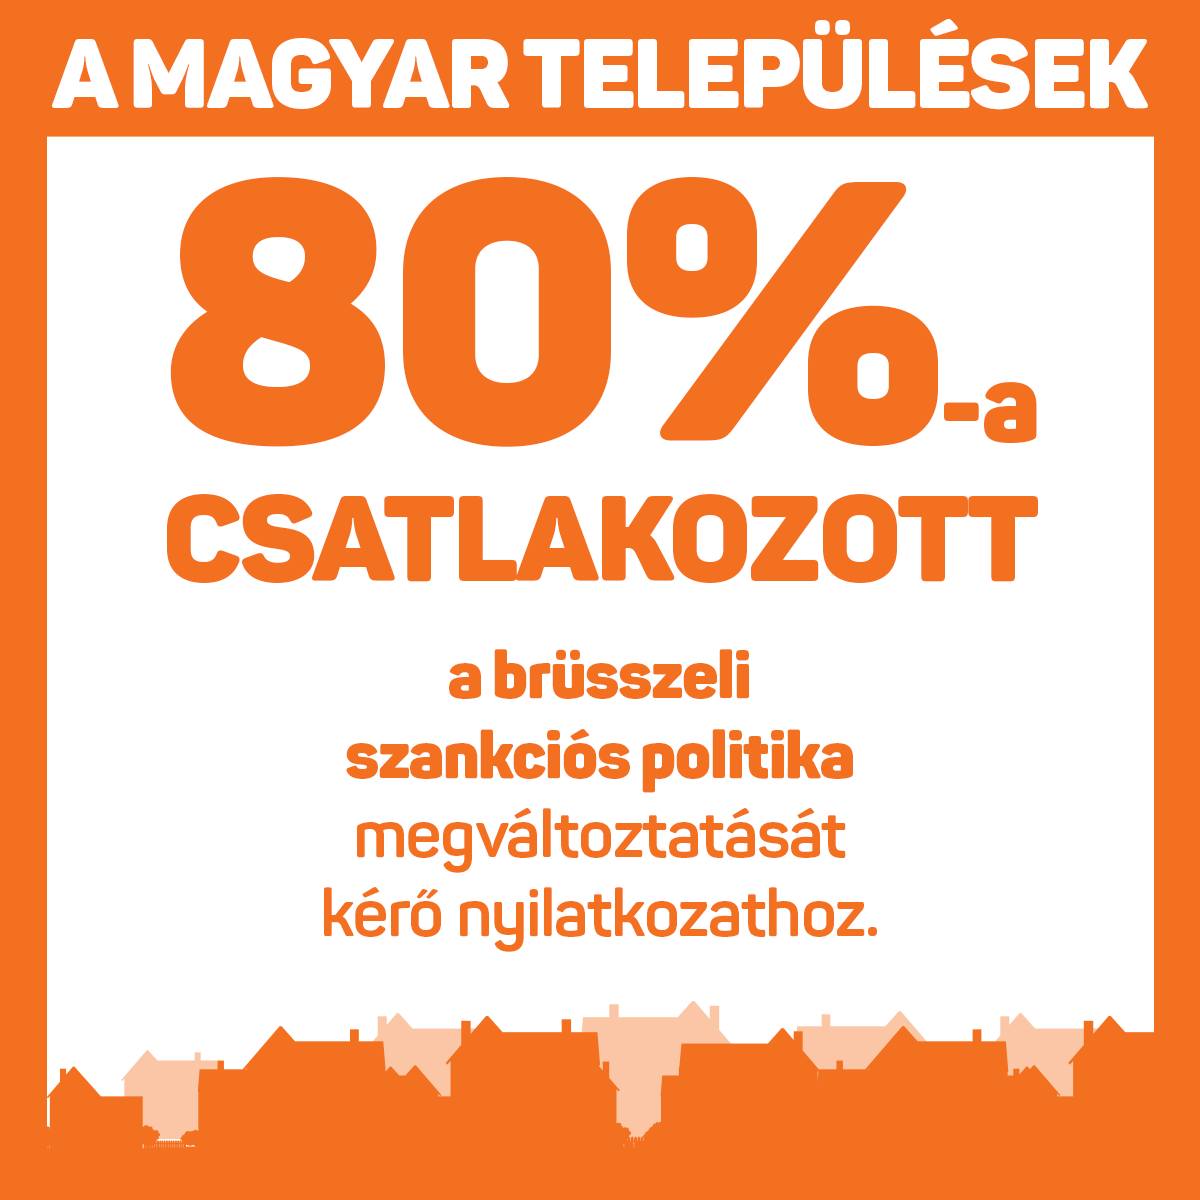 Példátlan összefogást eredményezett a magyarországi önkormányzatoknál az Európai Bizottság elnökének címzett, az uniós szankciós politika megváltoztatását, és a magyarokat is megillető uniós források elérését kérő levél. Szita Károly sajtótájékoztatón számolt be arról, hogy az általa másfél hónappal ezelőtt Ursula von der Leyenhez küldött nyilatkozathoz eddig a települések több mint 80 százaléka, 2551 önkormányzat csatlakozott.